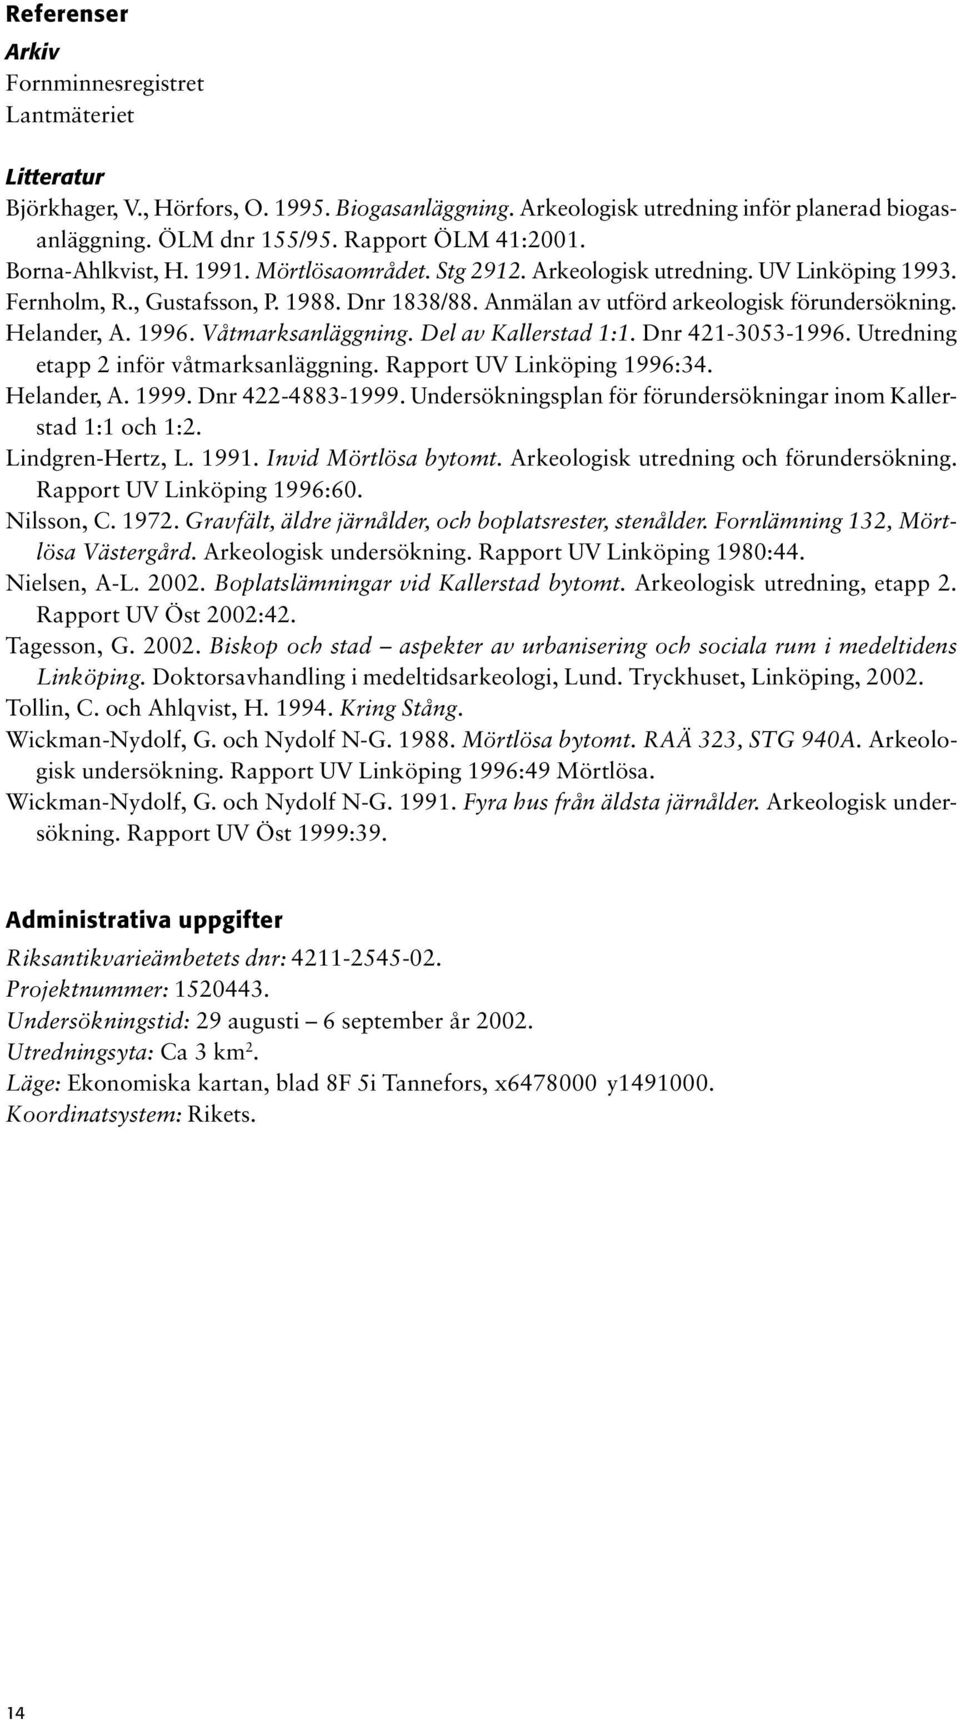 Anmälan av utförd arkeologisk förundersökning. Helander, A. 1996. Våtmarksanläggning. Del av Kallerstad 1:1. Dnr 421-3053-1996. Utredning etapp 2 inför våtmarksanläggning.